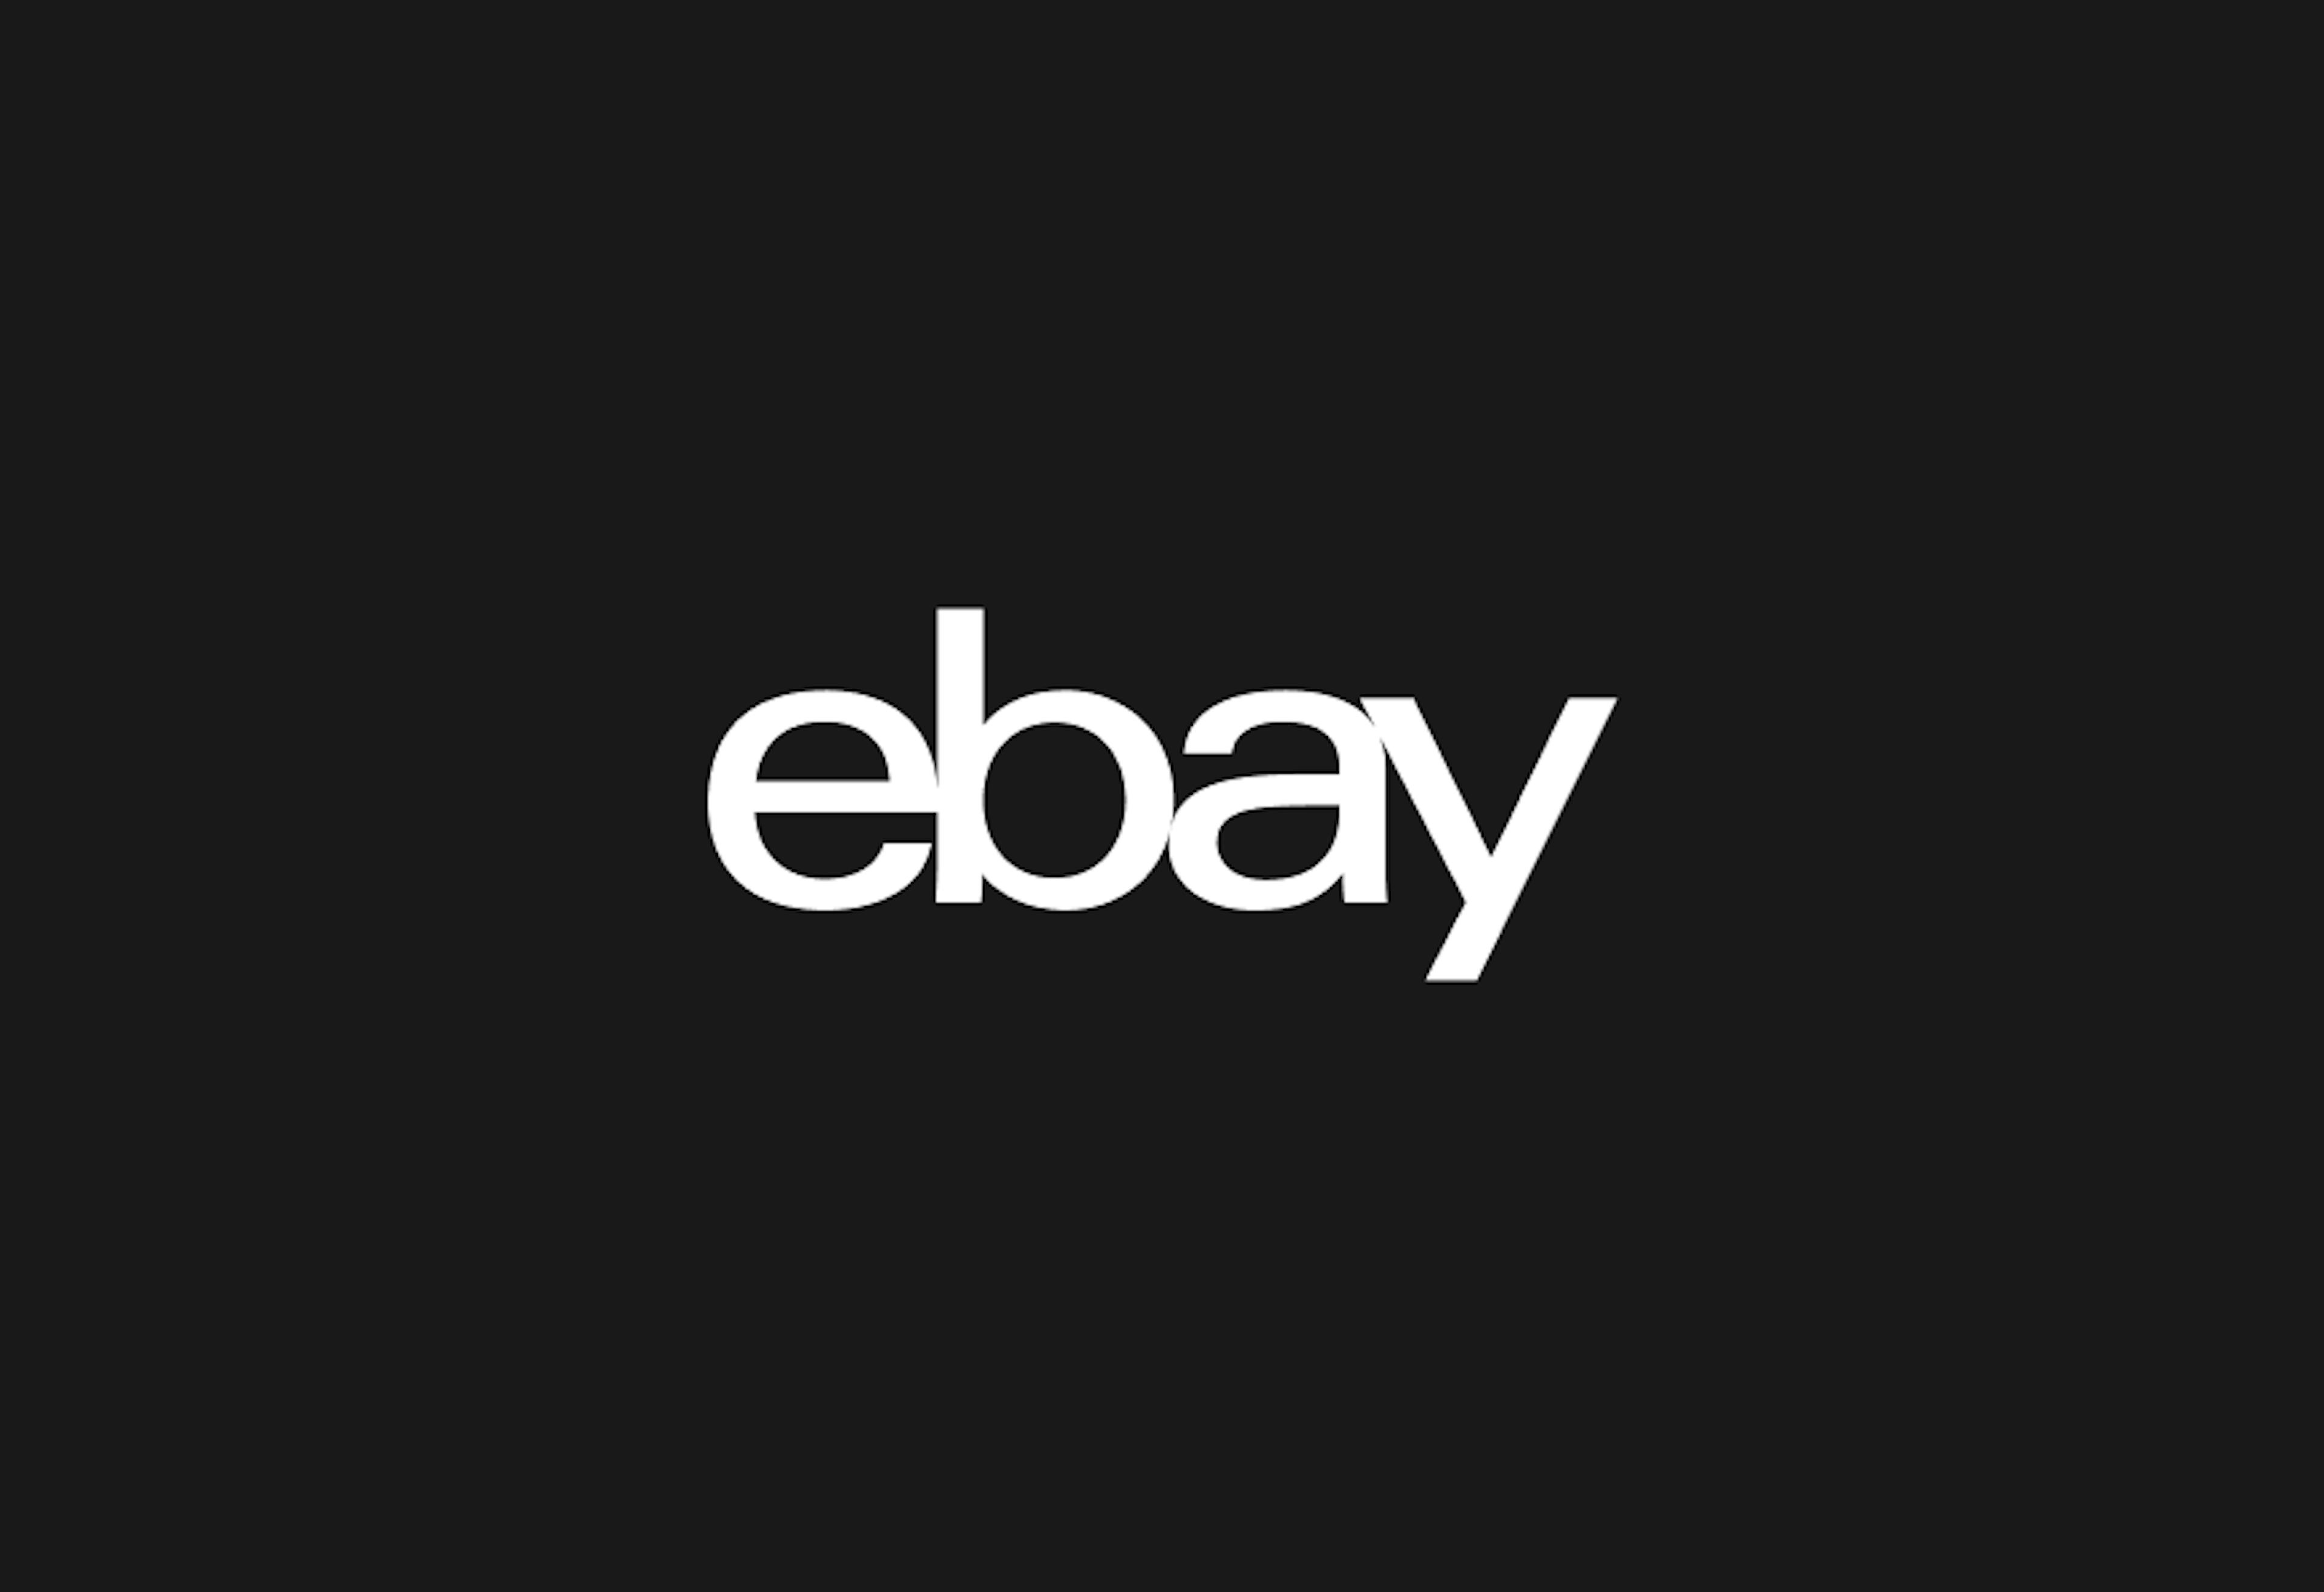 White eBay logo on black background.